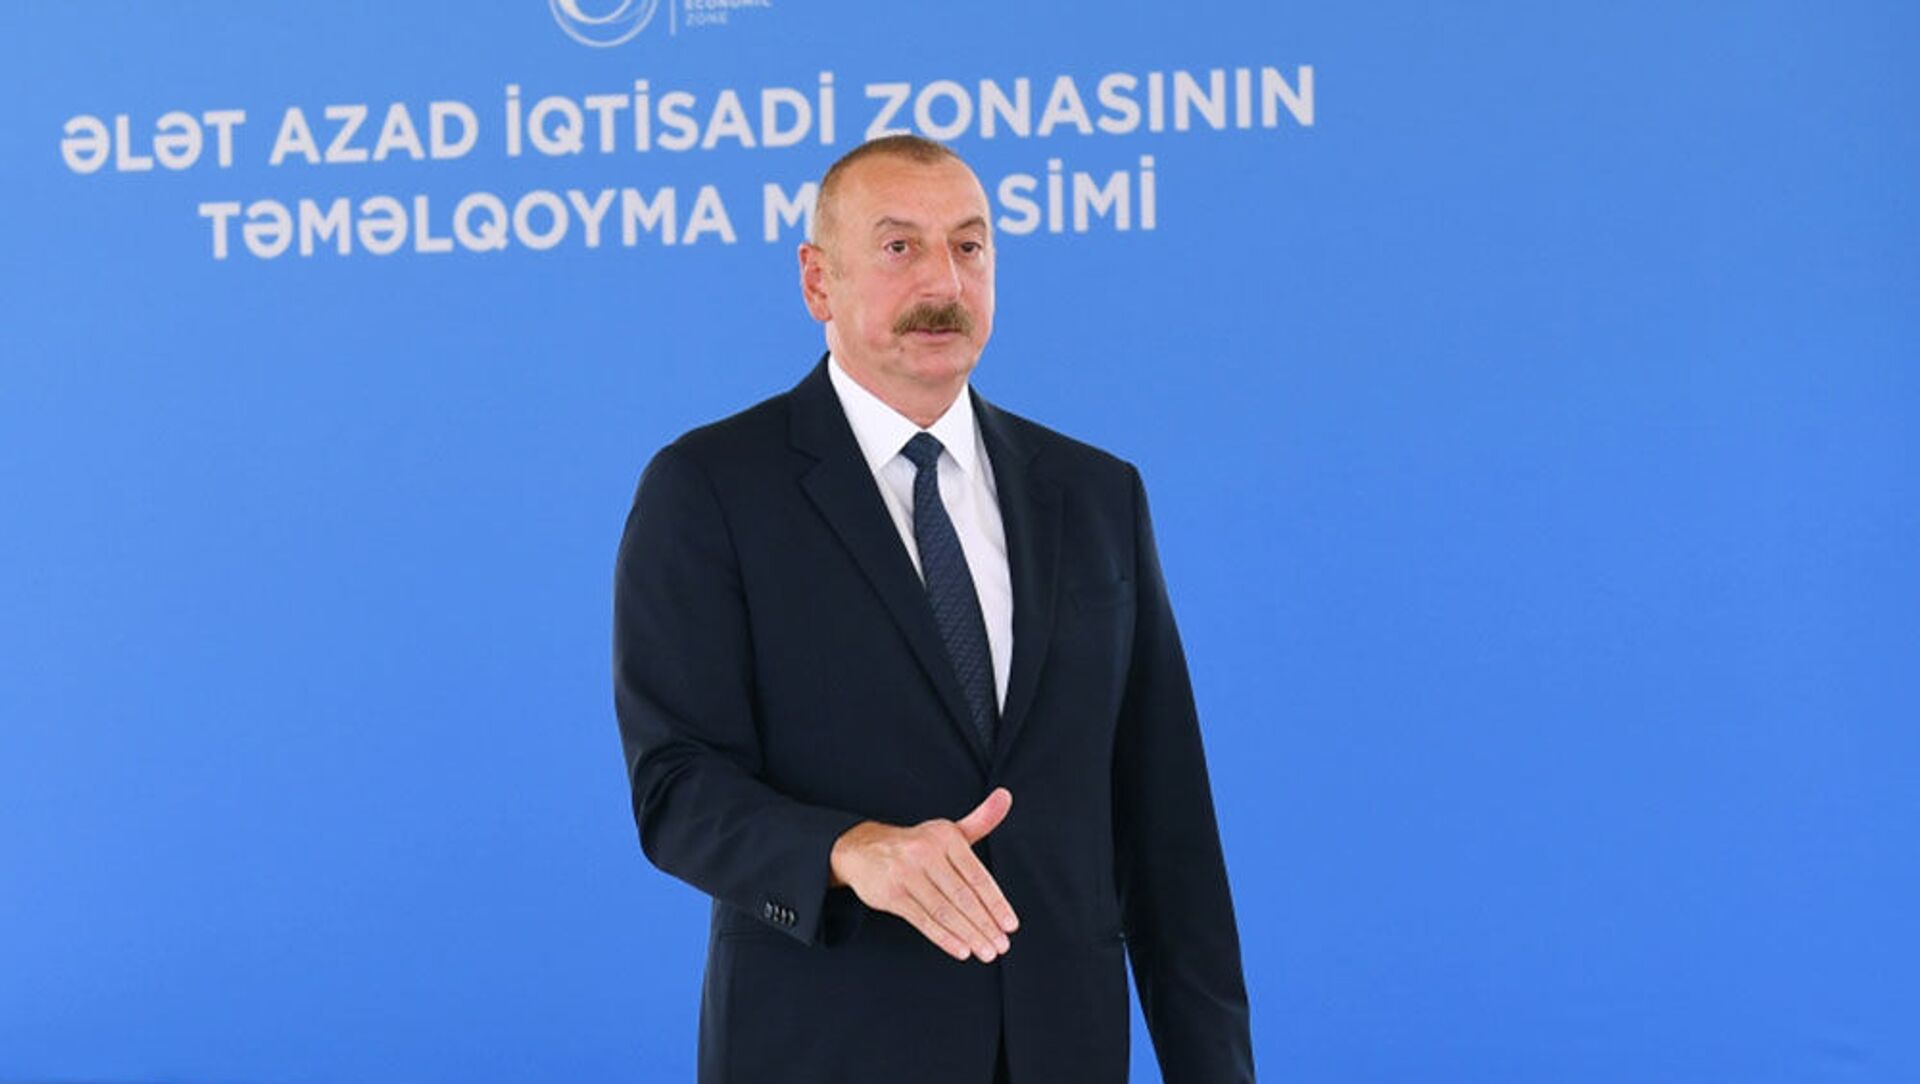 Президент Ильхам Алиев заложил фундамент Алятской свободной экономической зоны - Sputnik Азербайджан, 1920, 01.07.2021